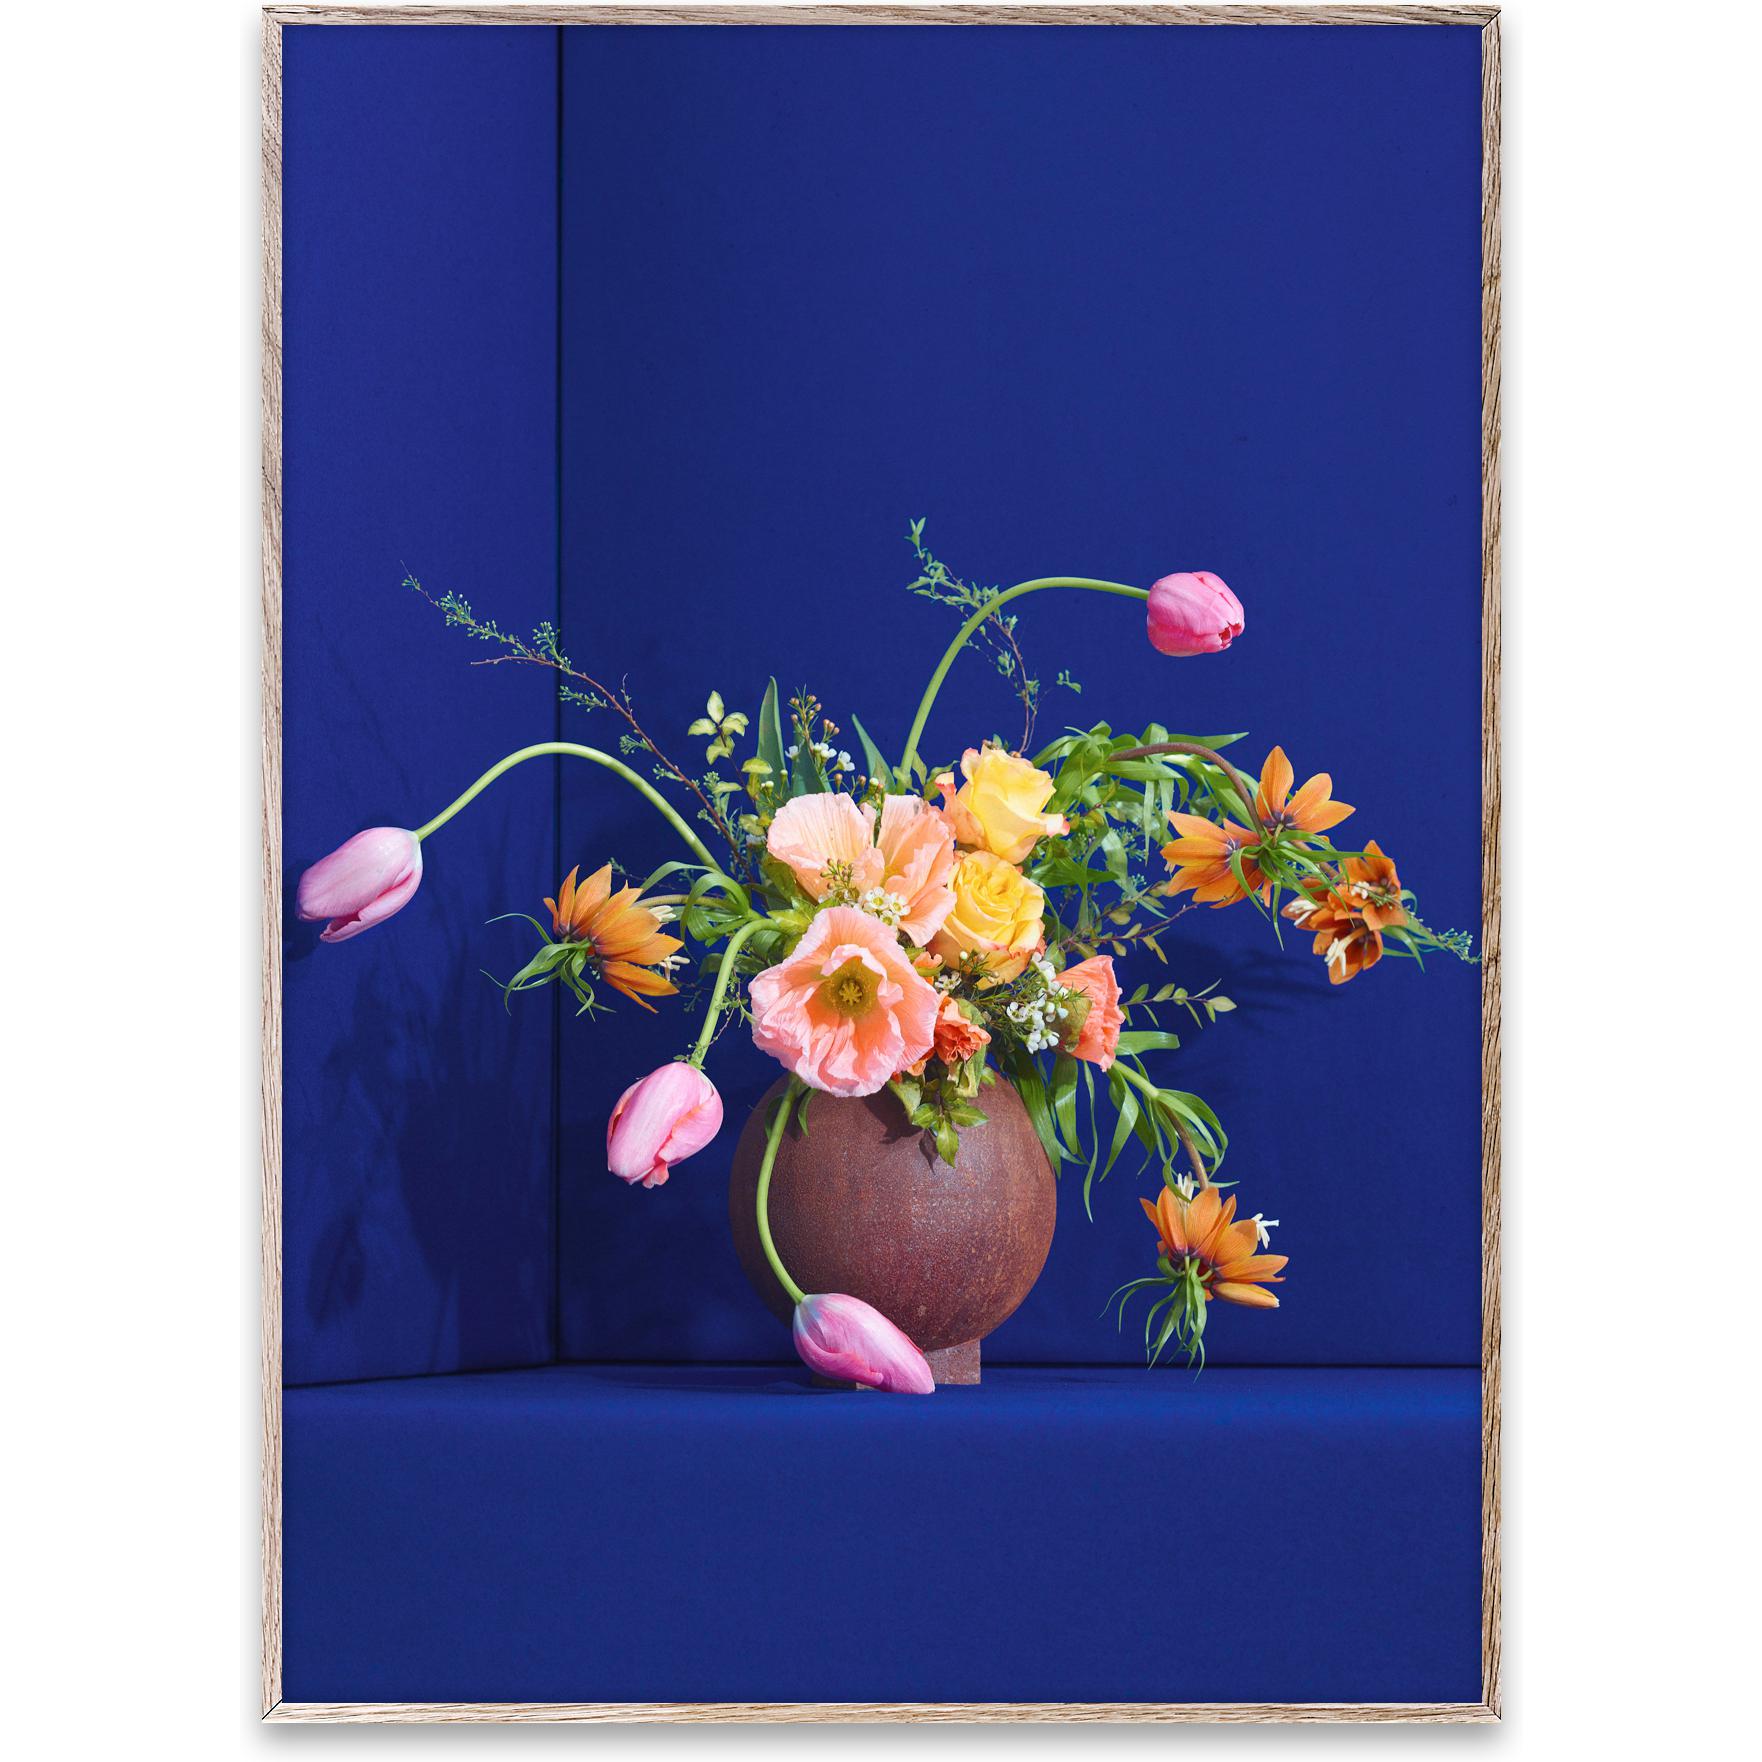 Papierkollektiv Blomst 01 Poster 70x100 cm, blau